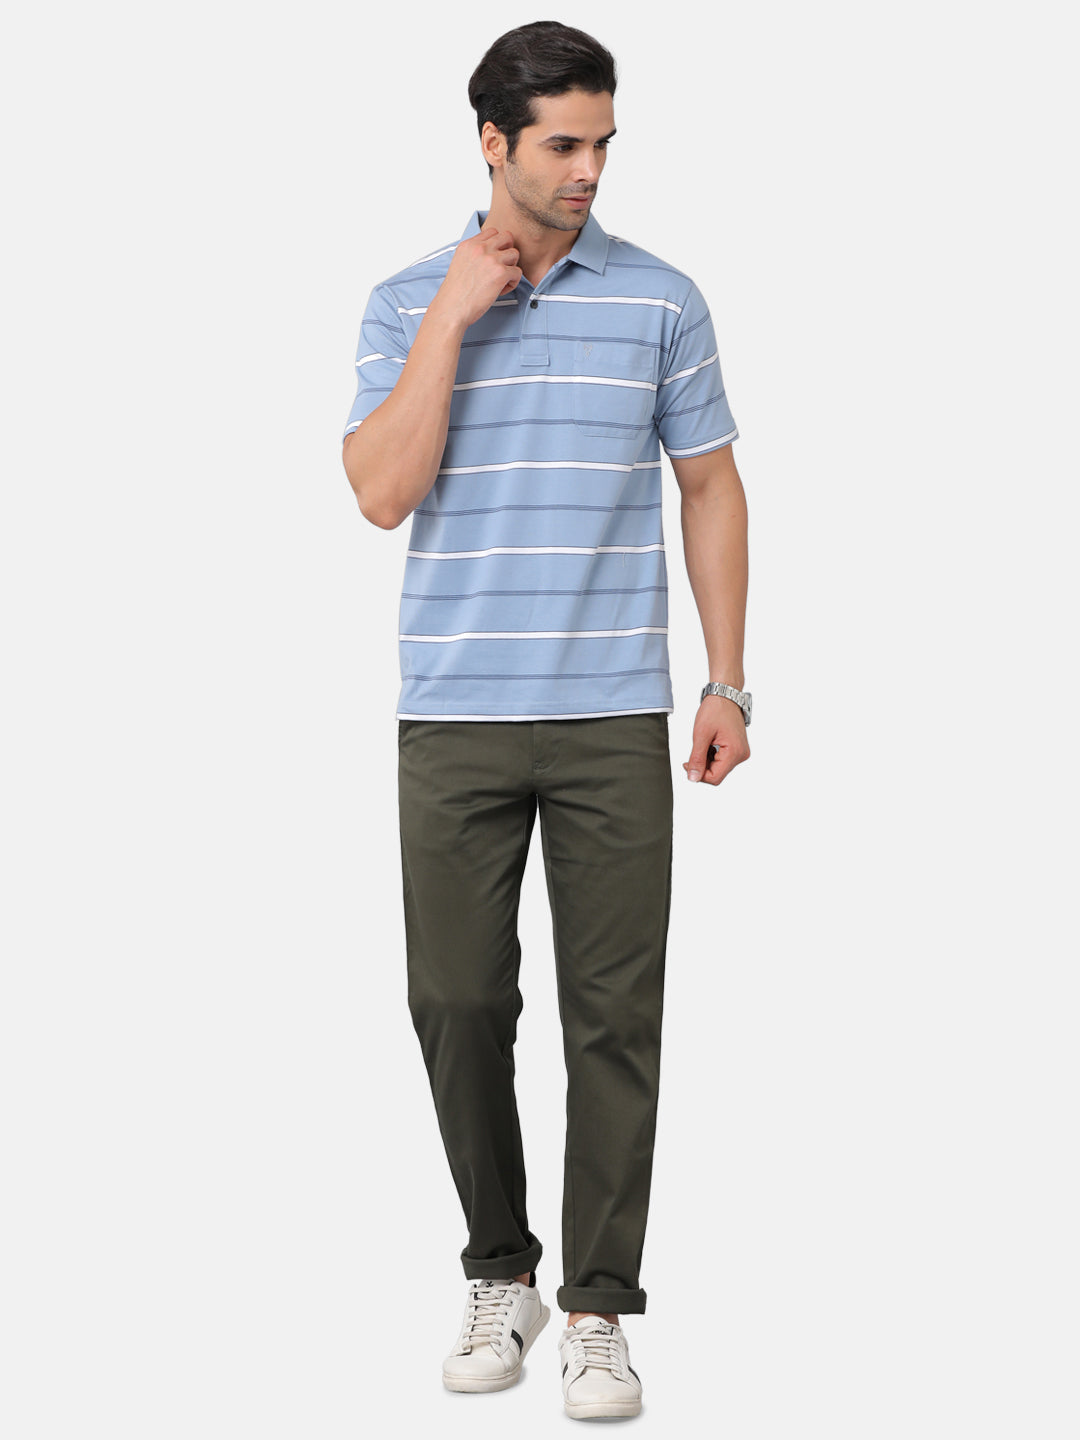 Classic Polo Mens Cotton Blend Striped Authentic Fit Polo Neck Blue Color T-Shirt | Avon 478a